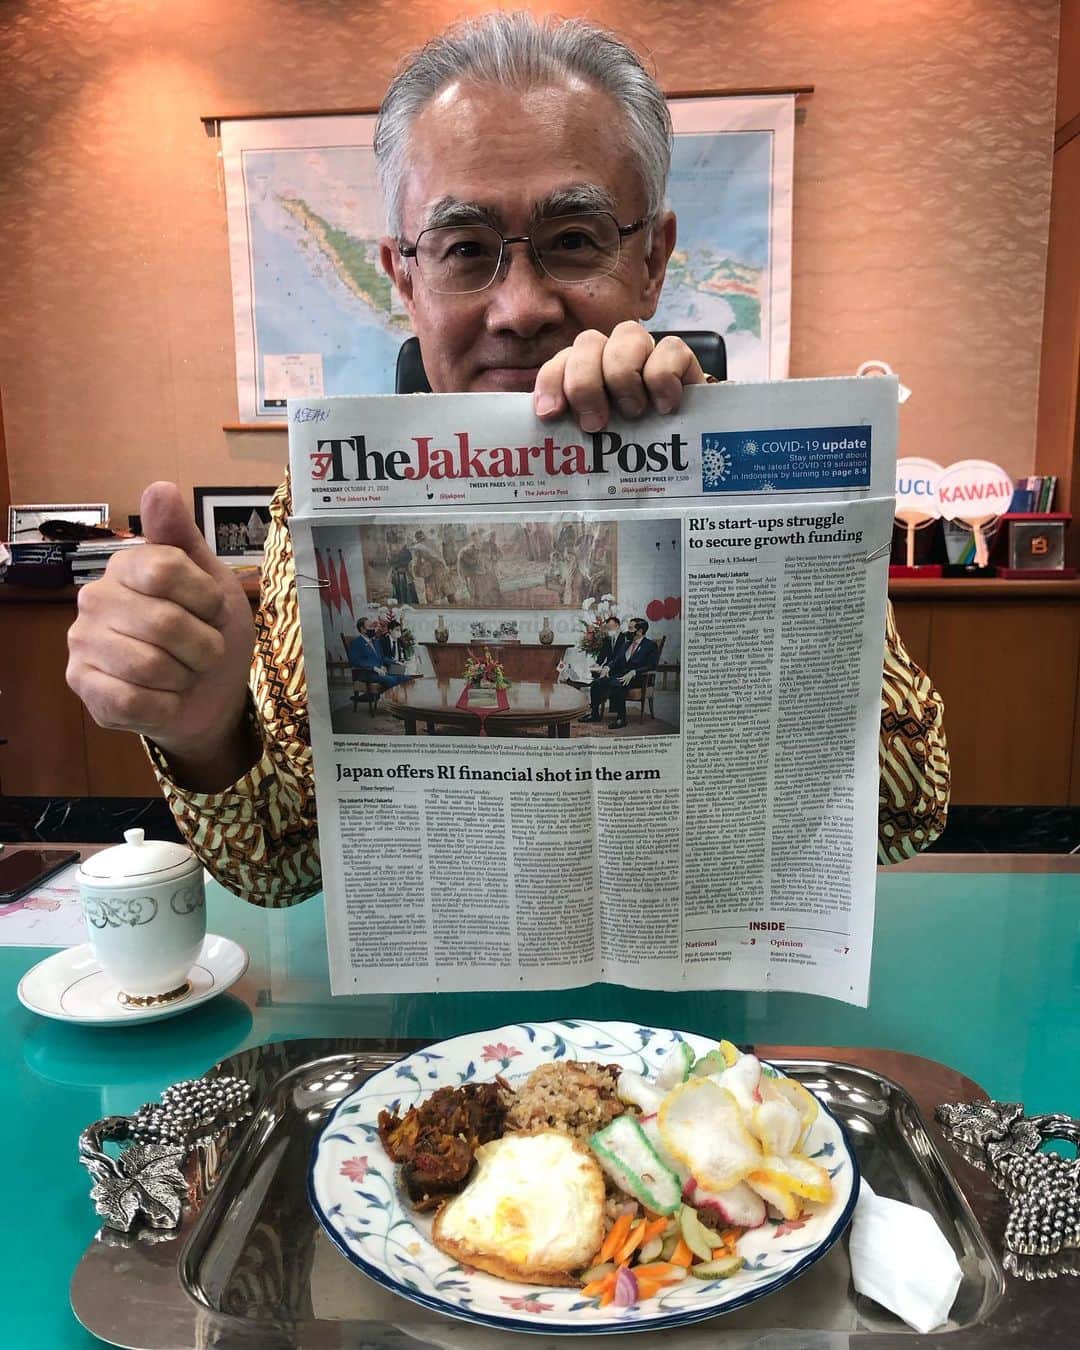 石井正文のインスタグラム：「Menu makan siang adalah nasi goreng ikan cakalang🐟🐟 khas Manado. Nasi goreng jenisnya bermacam-macam dan yang sering dimakan adalah nasi goreng daging ayam tetapi nasi goreng ikan ini juga enak sekali.🍴 Kunjungan PM Suga Yoshihide ke Indonesia 2 hari yang lalu sudah dimuat di halaman utama harian Jakarta Post dan Kompas.😋👍🏻👍🏻  お昼のメニューはナシゴレン・イカン・チャカランでした。イカンとは魚、イカン・チャカランでカツオです🐟🐟マナド料理です。ナシゴレンにもいろいろあり、鶏肉のナシゴレンが多いですが、魚のナシゴレンもとても美味しかったです🍴 先日の菅総理のインドネシア訪問は、Jakarta PostやKompasにも大きく取り上げられていました😋👍🏻👍🏻  #dutabesarjepang#dubesishii#makansiangdubes#ishiitaishi#exploreindonesia#makanankhasindonesia #seriemakansiangdubes#サラメシ#大使メシ#ジャカルタ#インドネシア#nasigoreng#ikancakalang#manado#jakartapost#kompas#perdanamenterijepang#lawatanluarnegeri」